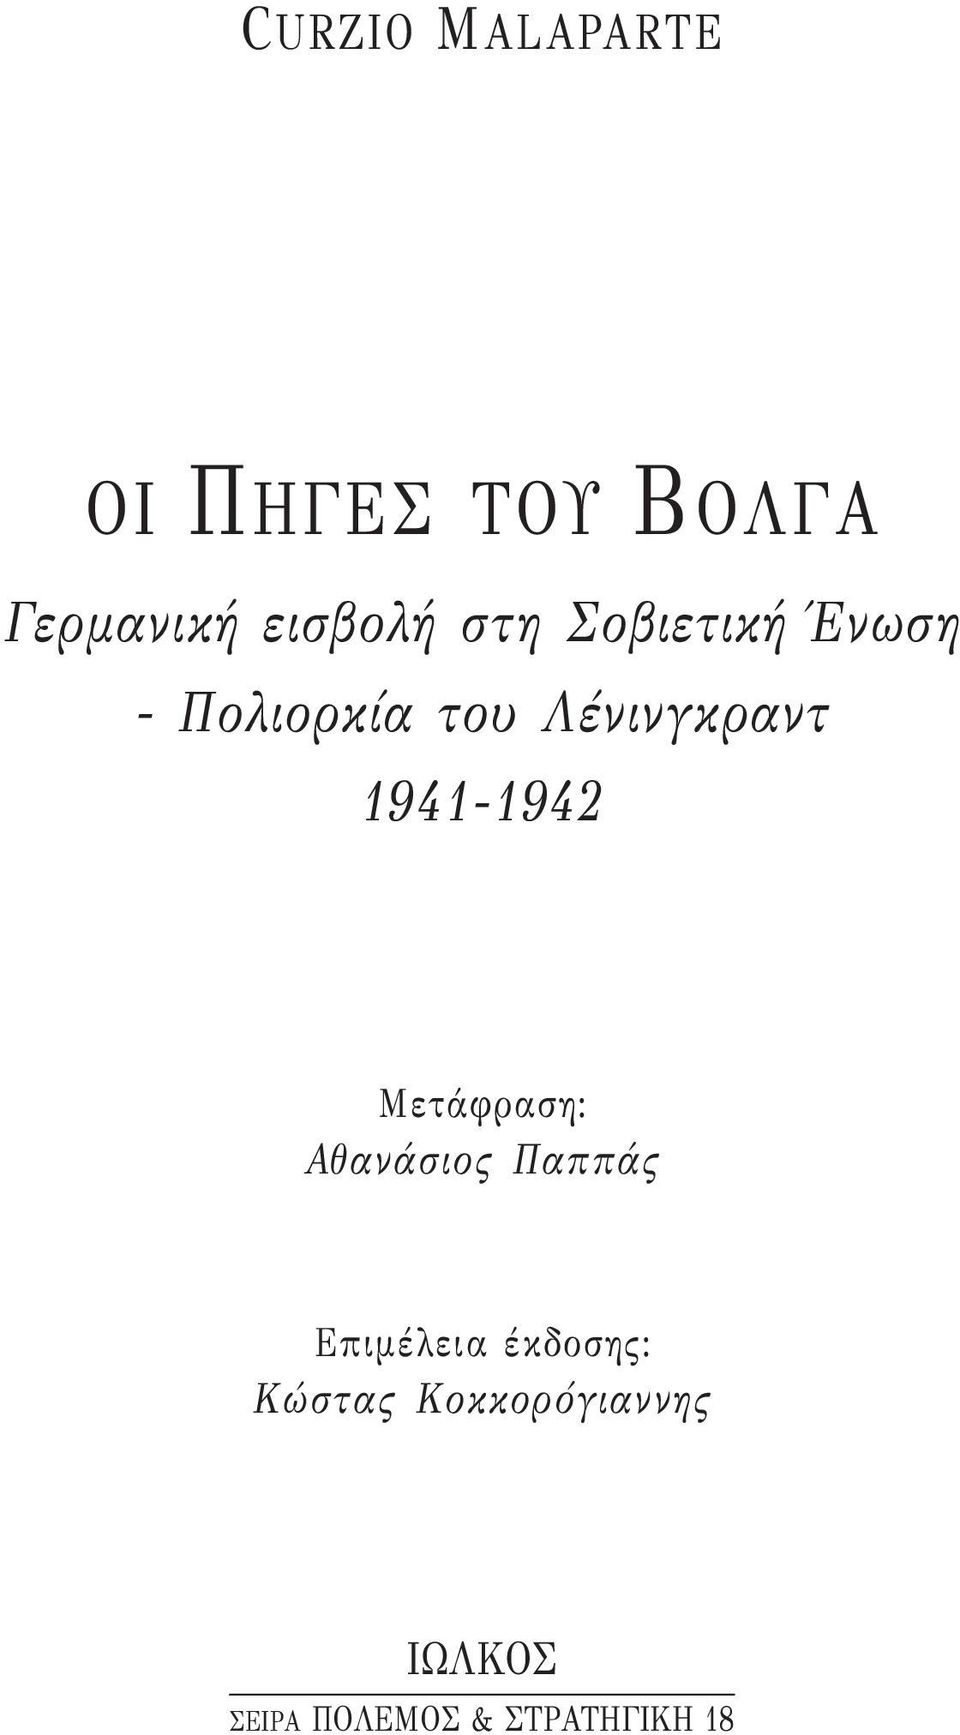 1941-1942 Μετάφραση: Αθανάσιος Παππάς Επιμέλεια